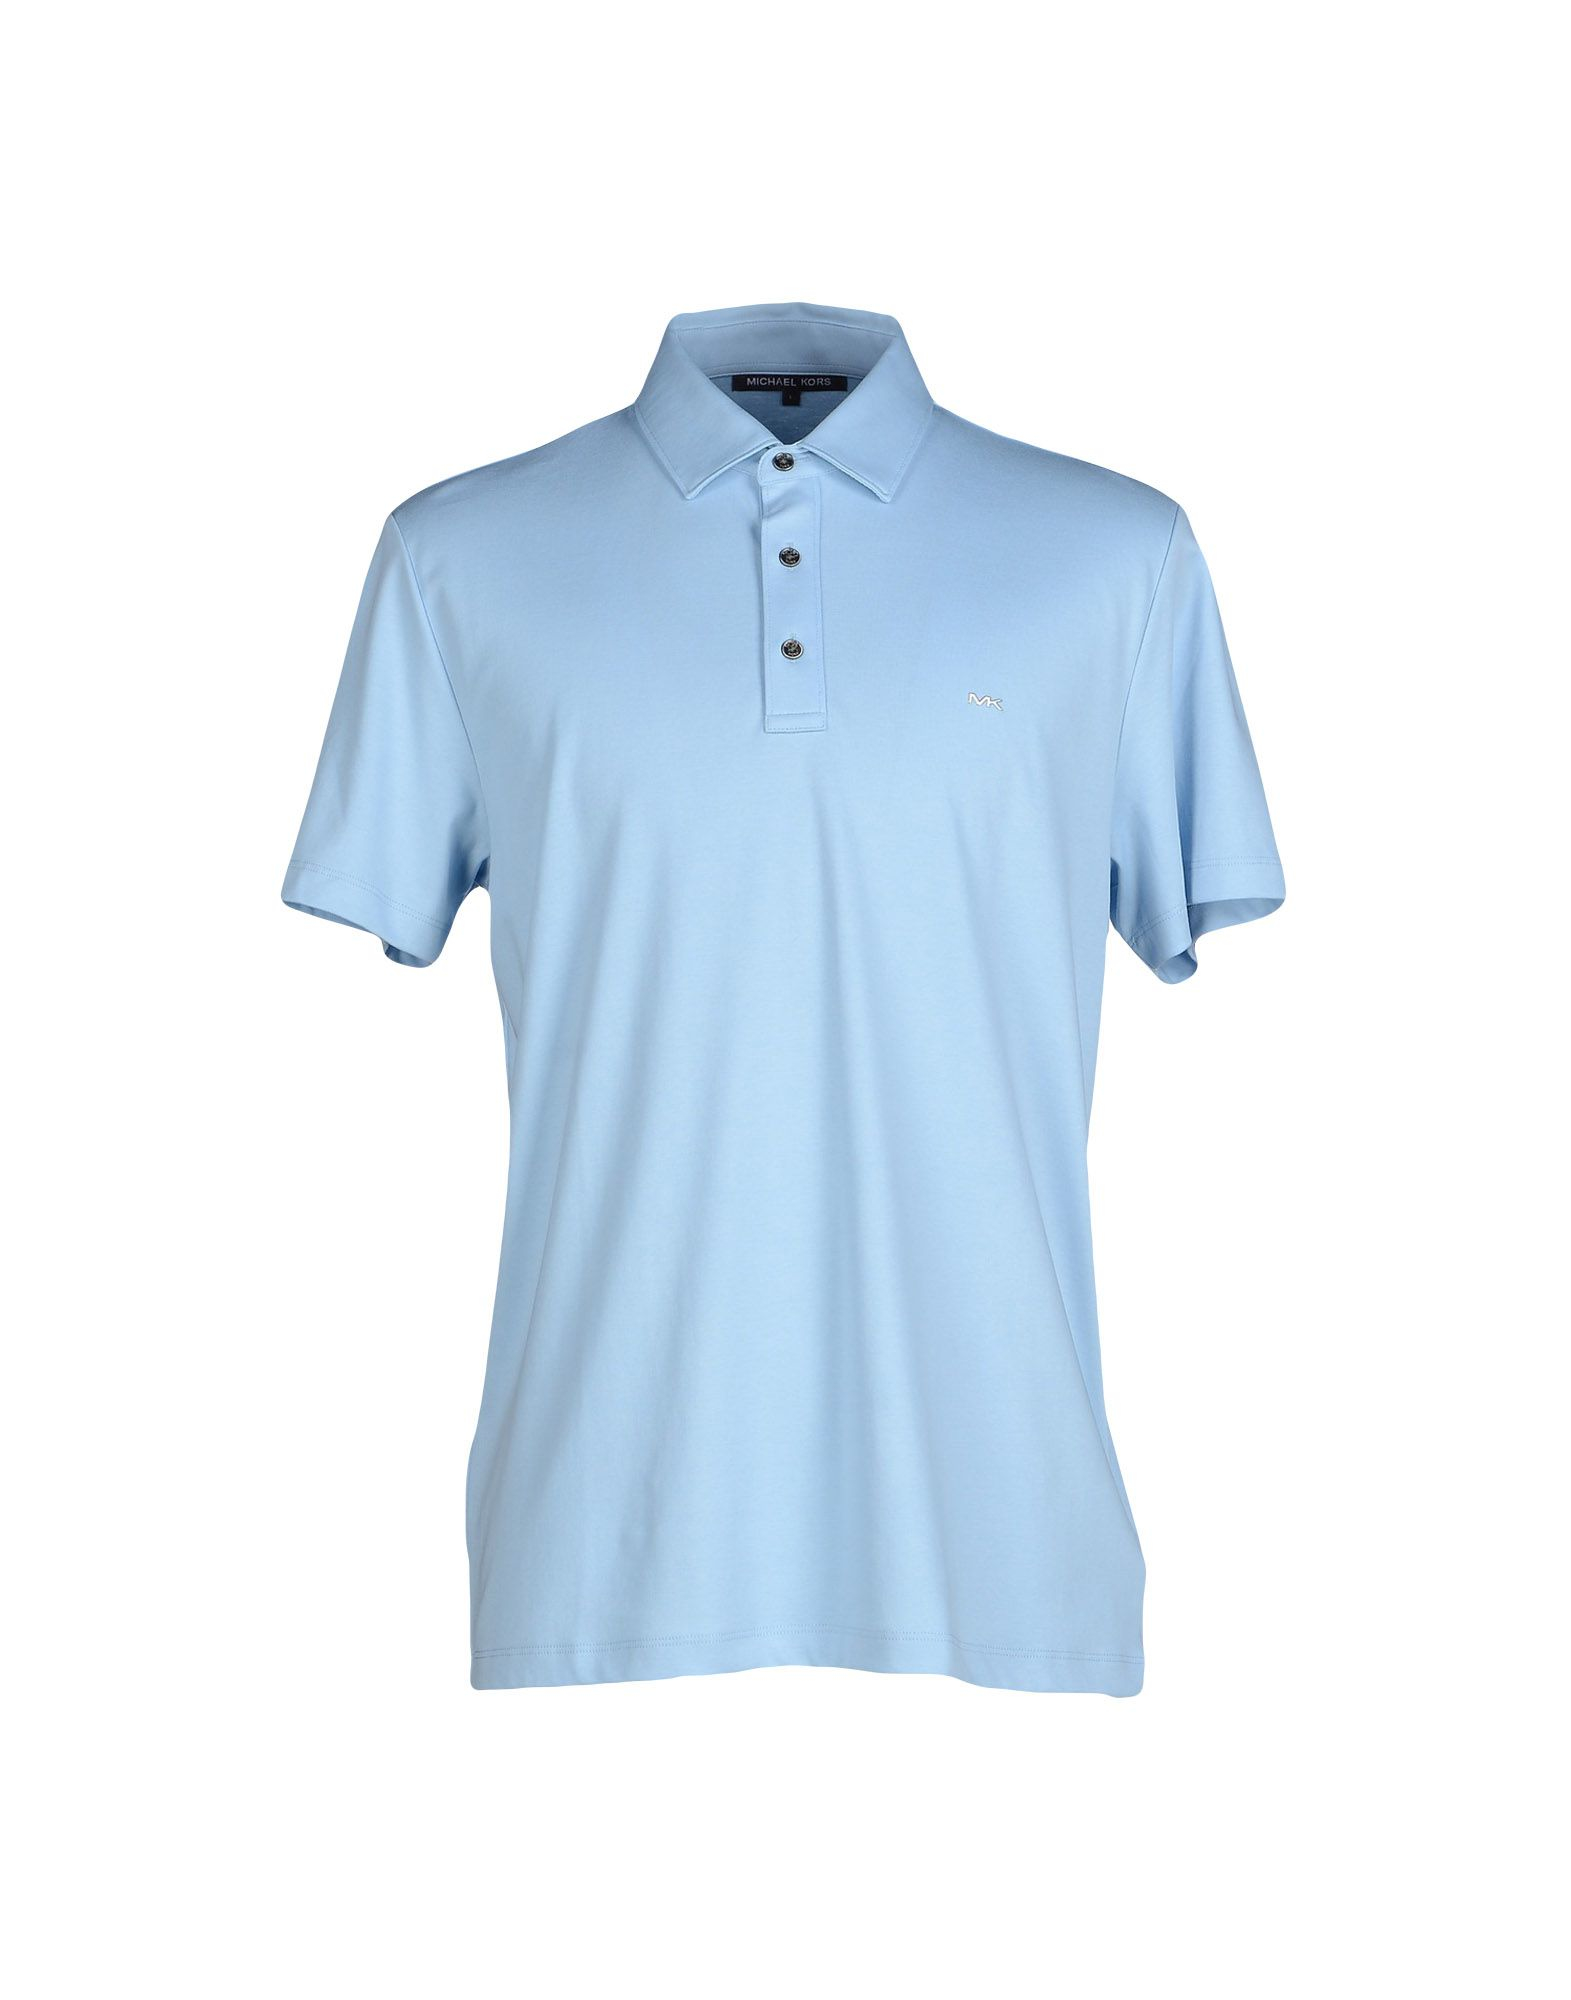 Lyst - Michael Kors Polo Shirt in Blue for Men